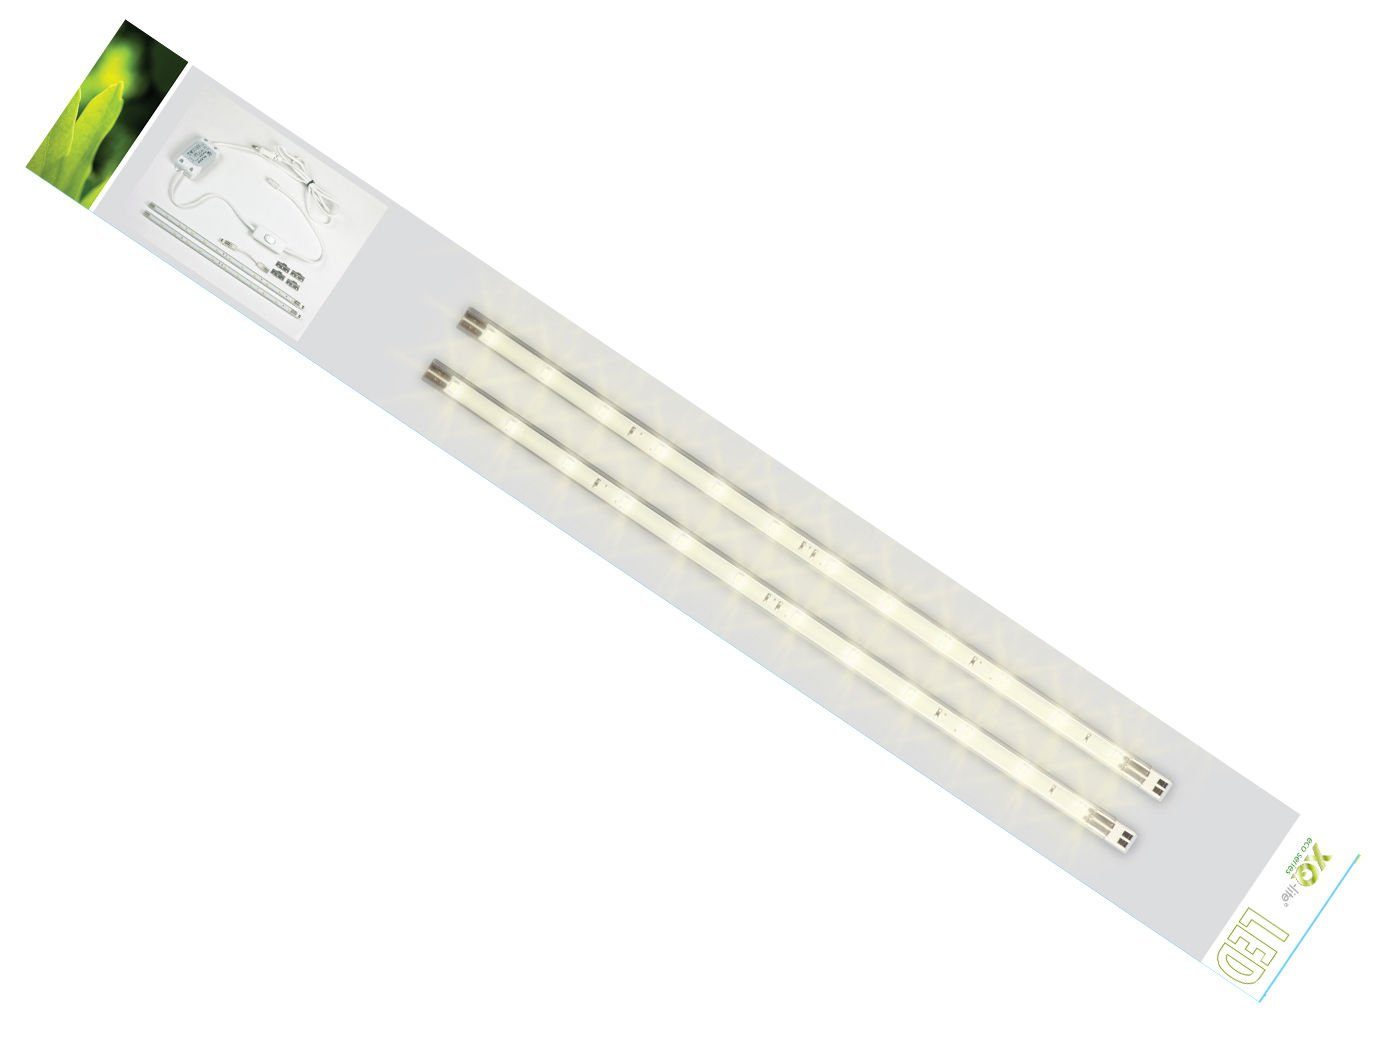 LETGOSPT LED-Streifen 2 Stück LED Innenlichtleiste Innenbeleuchtung 108LED  12V Weiß Leuchtet, mit EIN/AUS Schalter für Auto Wohnmobile LKW Van Küche